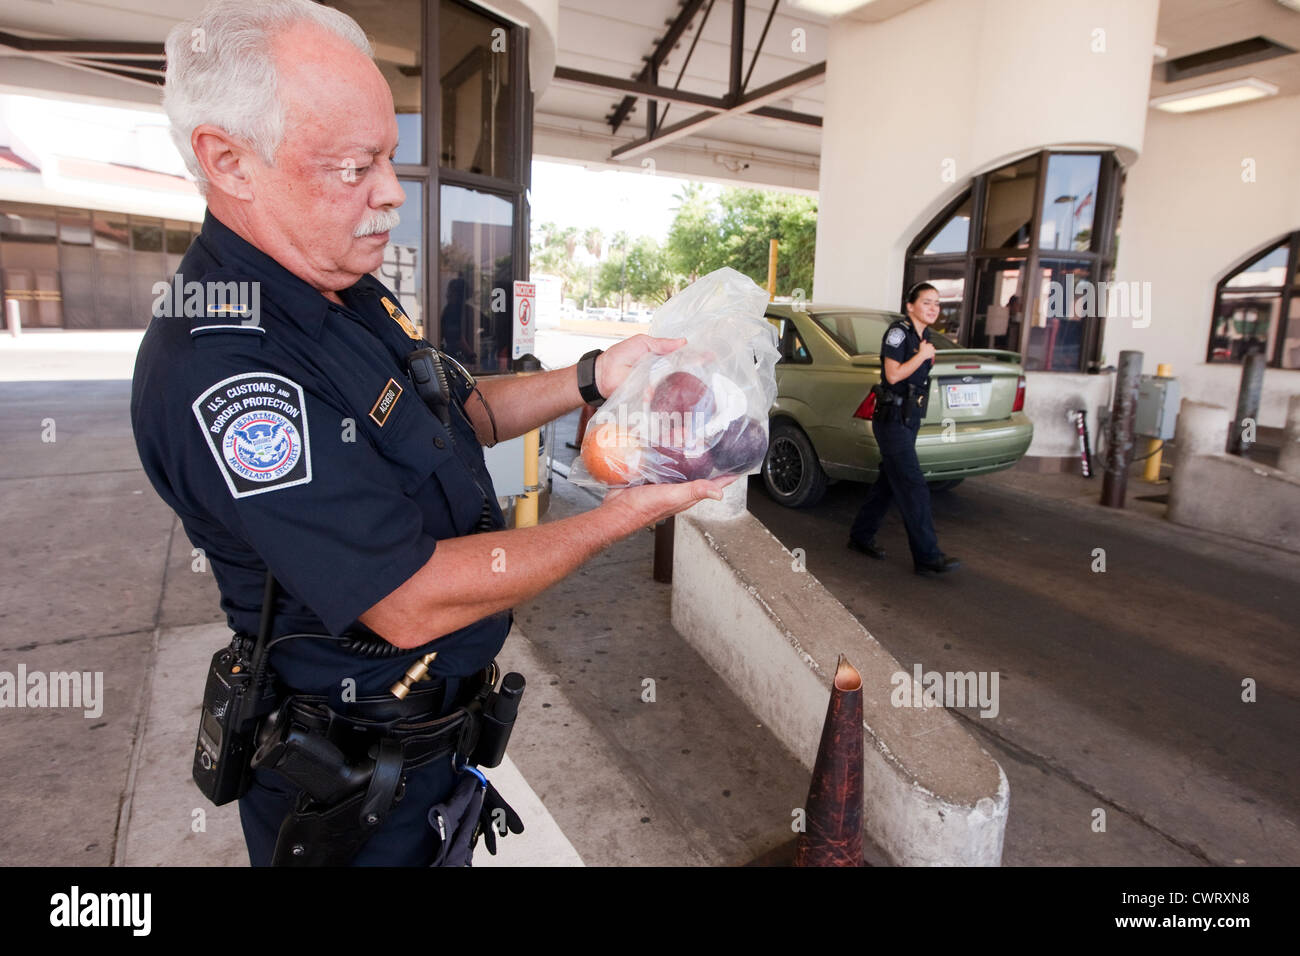 Männliche Offizier hält Beutel mit eingezogenen Frucht brachten aus Mexiko an der internationalen Brücke Laredo, Texas Stockfoto